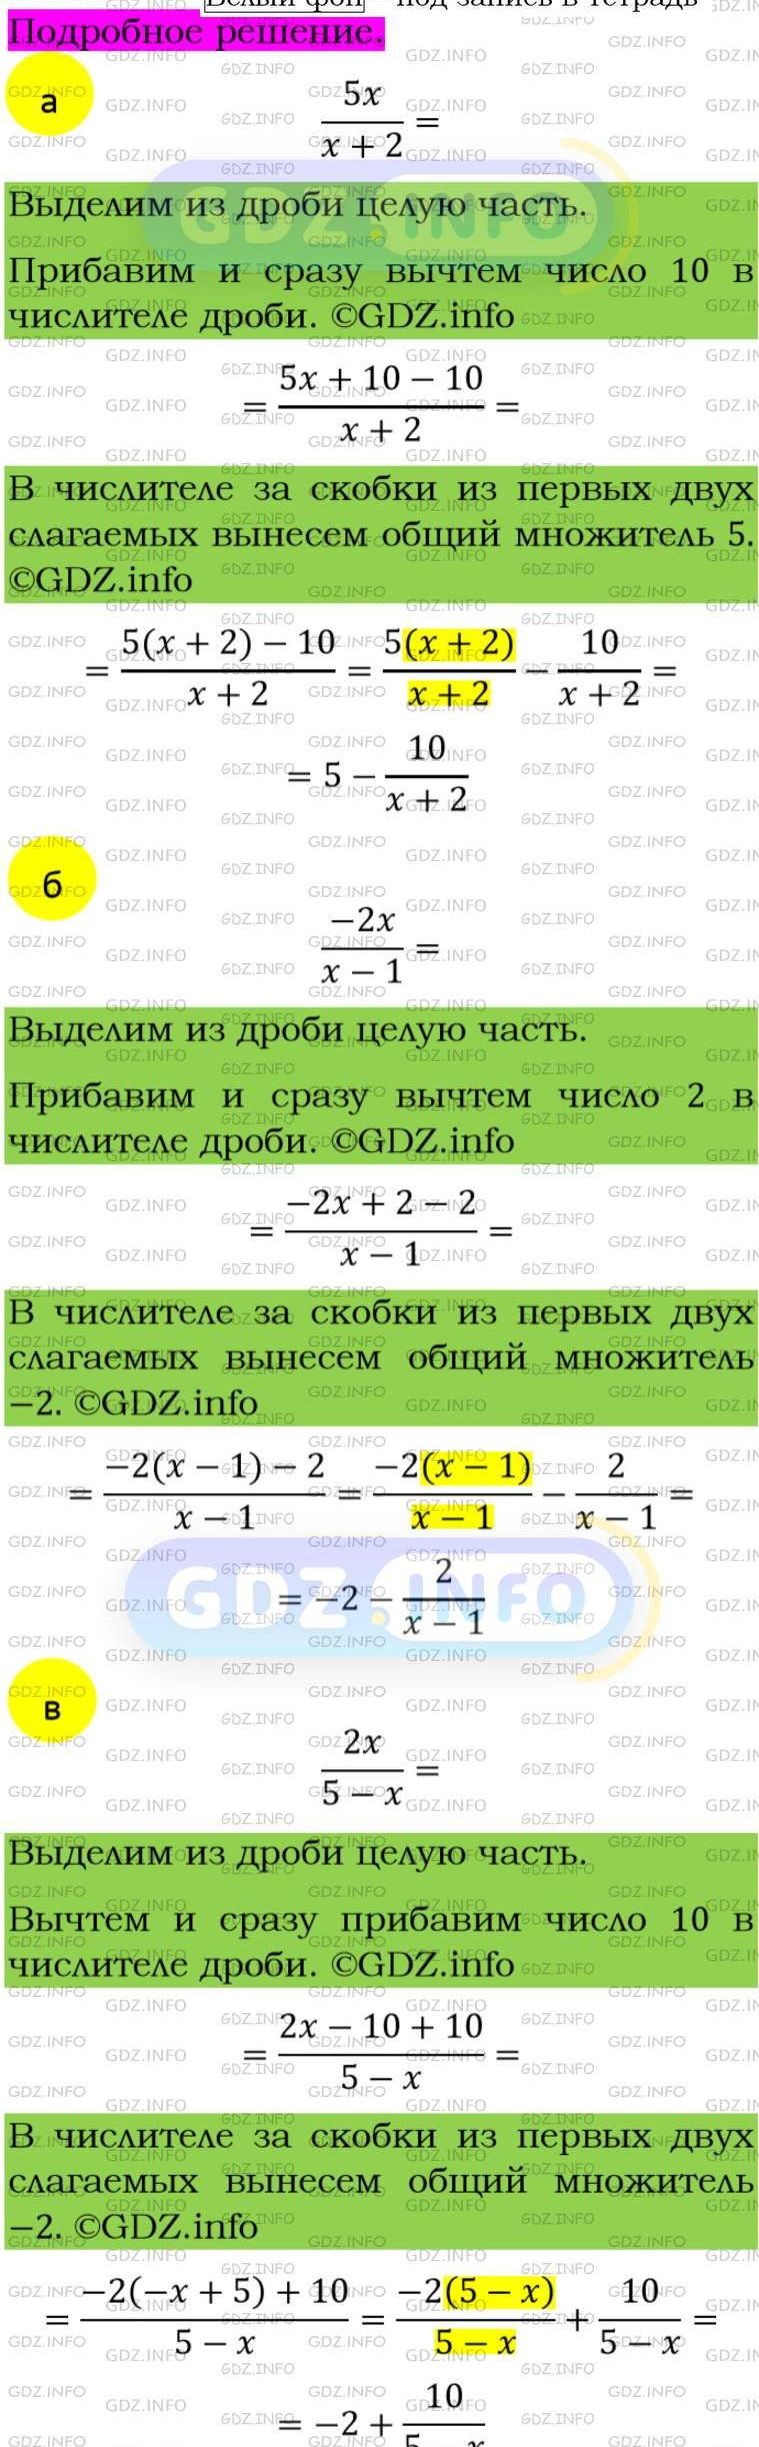 Фото подробного решения: Номер задания №240 из ГДЗ по Алгебре 8 класс: Макарычев Ю.Н.